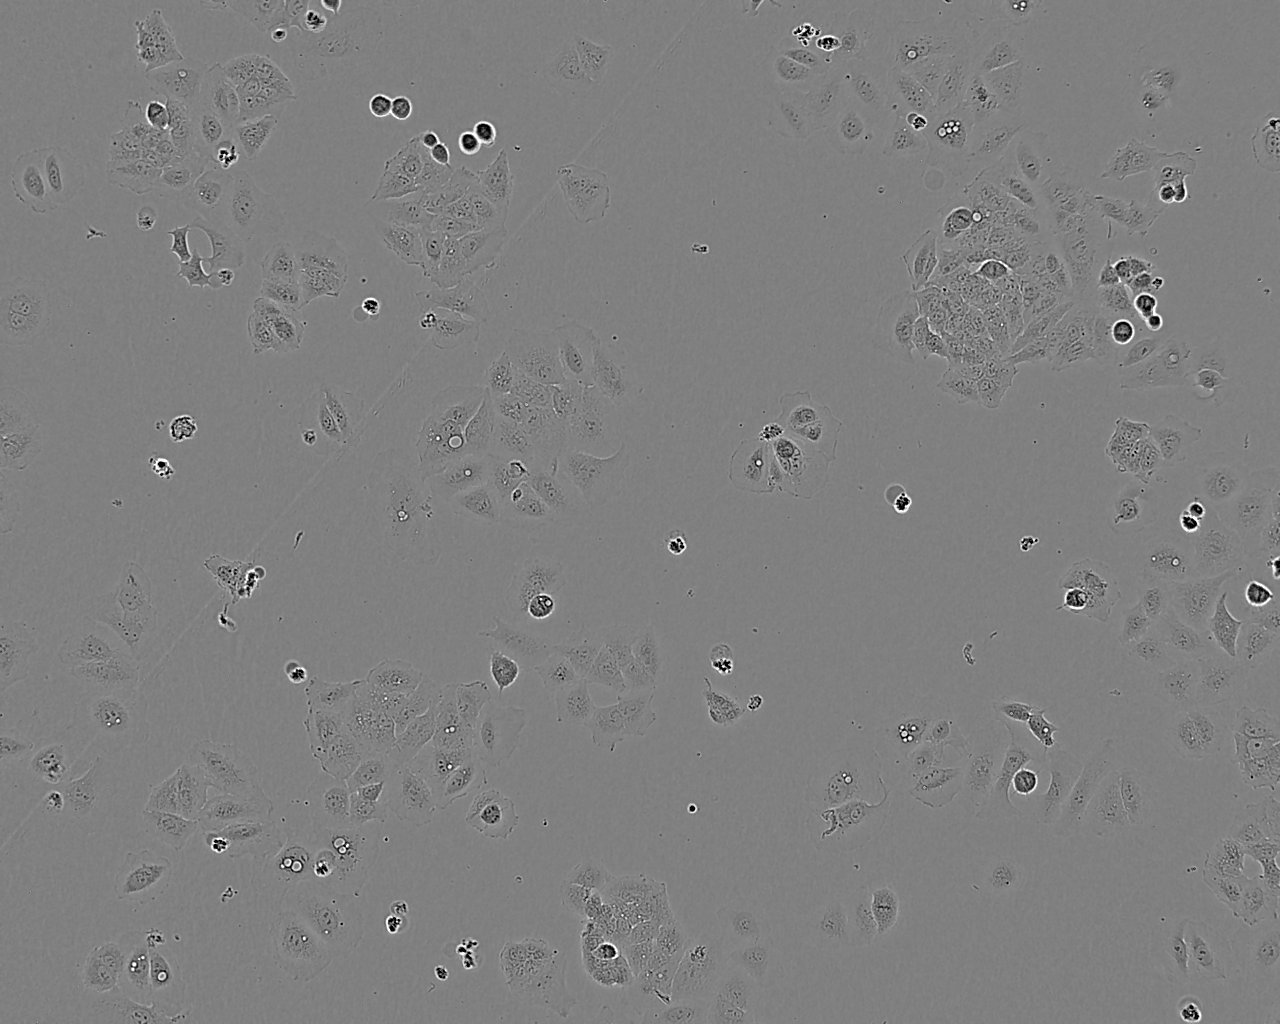 A2780/Taxol 人卵巢癌细胞系,A2780/Taxol